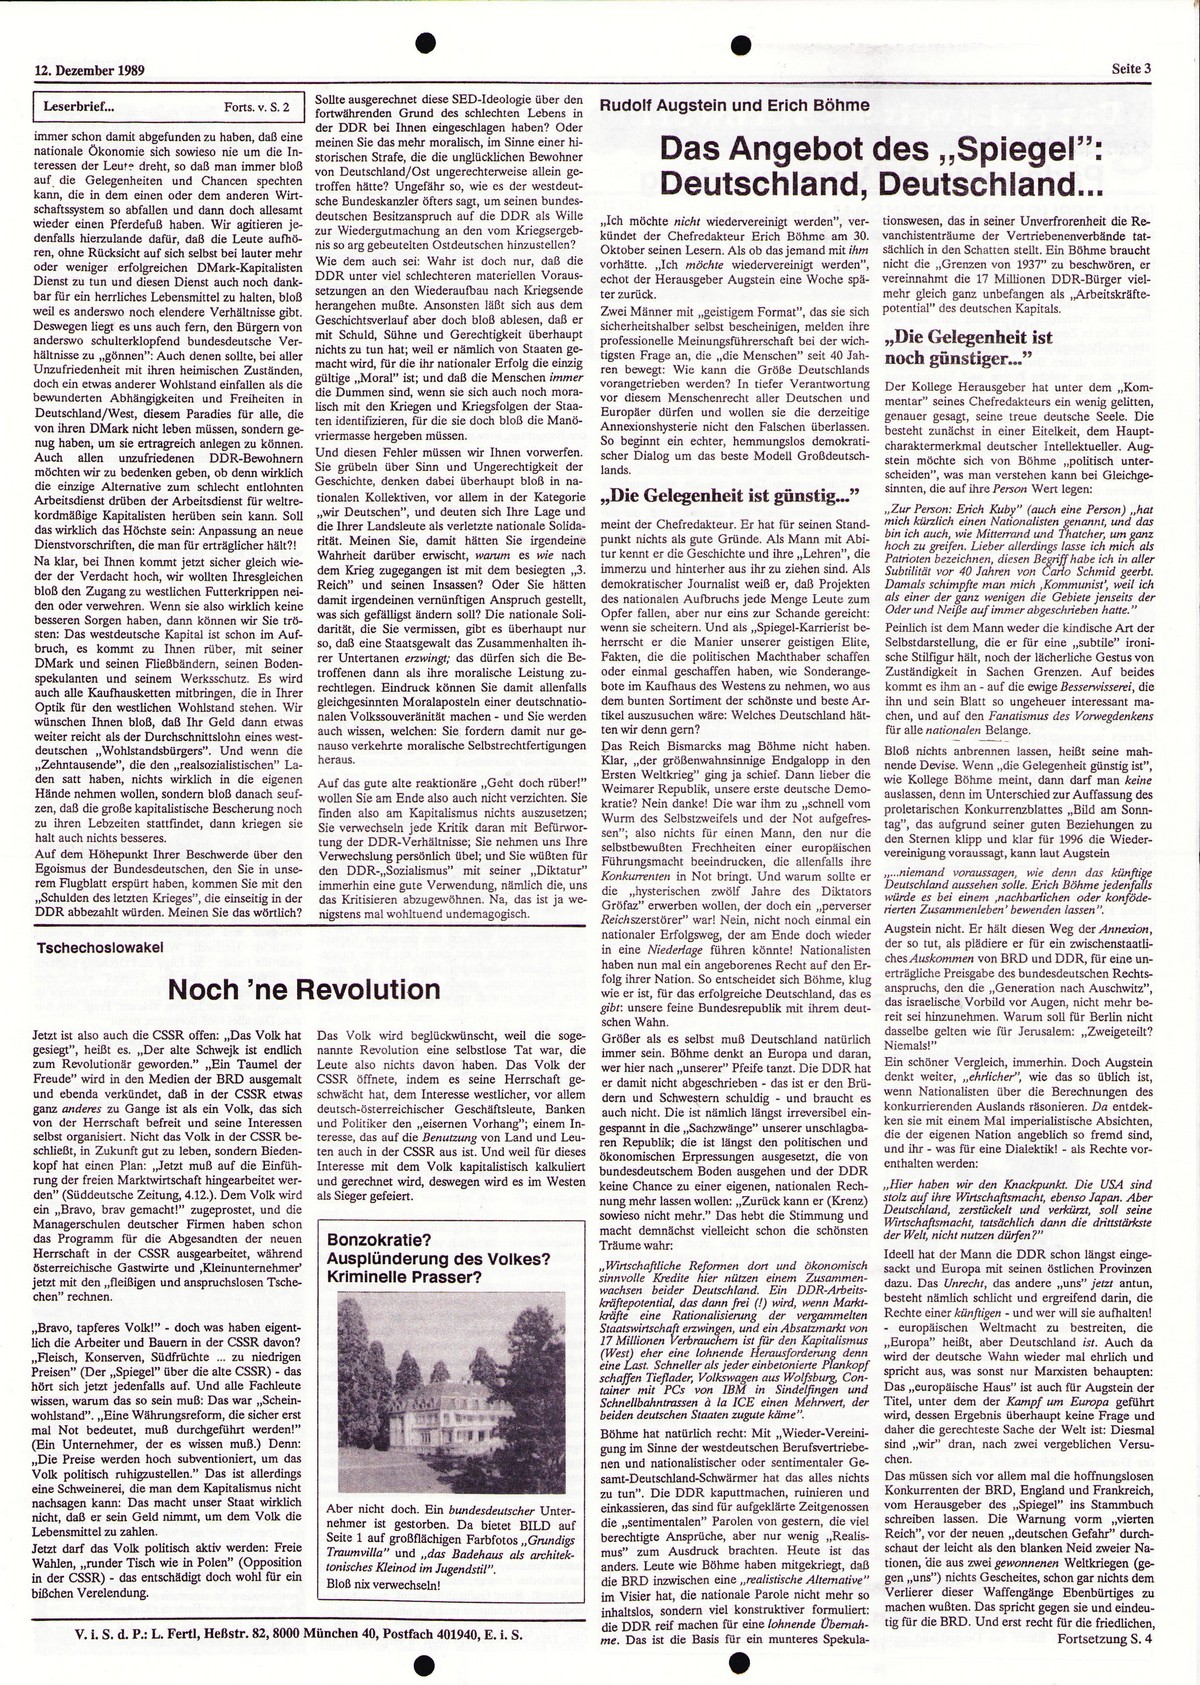 Ruhrgebiet_MG_Marxistische_Hochschulzeitung_19891212_003